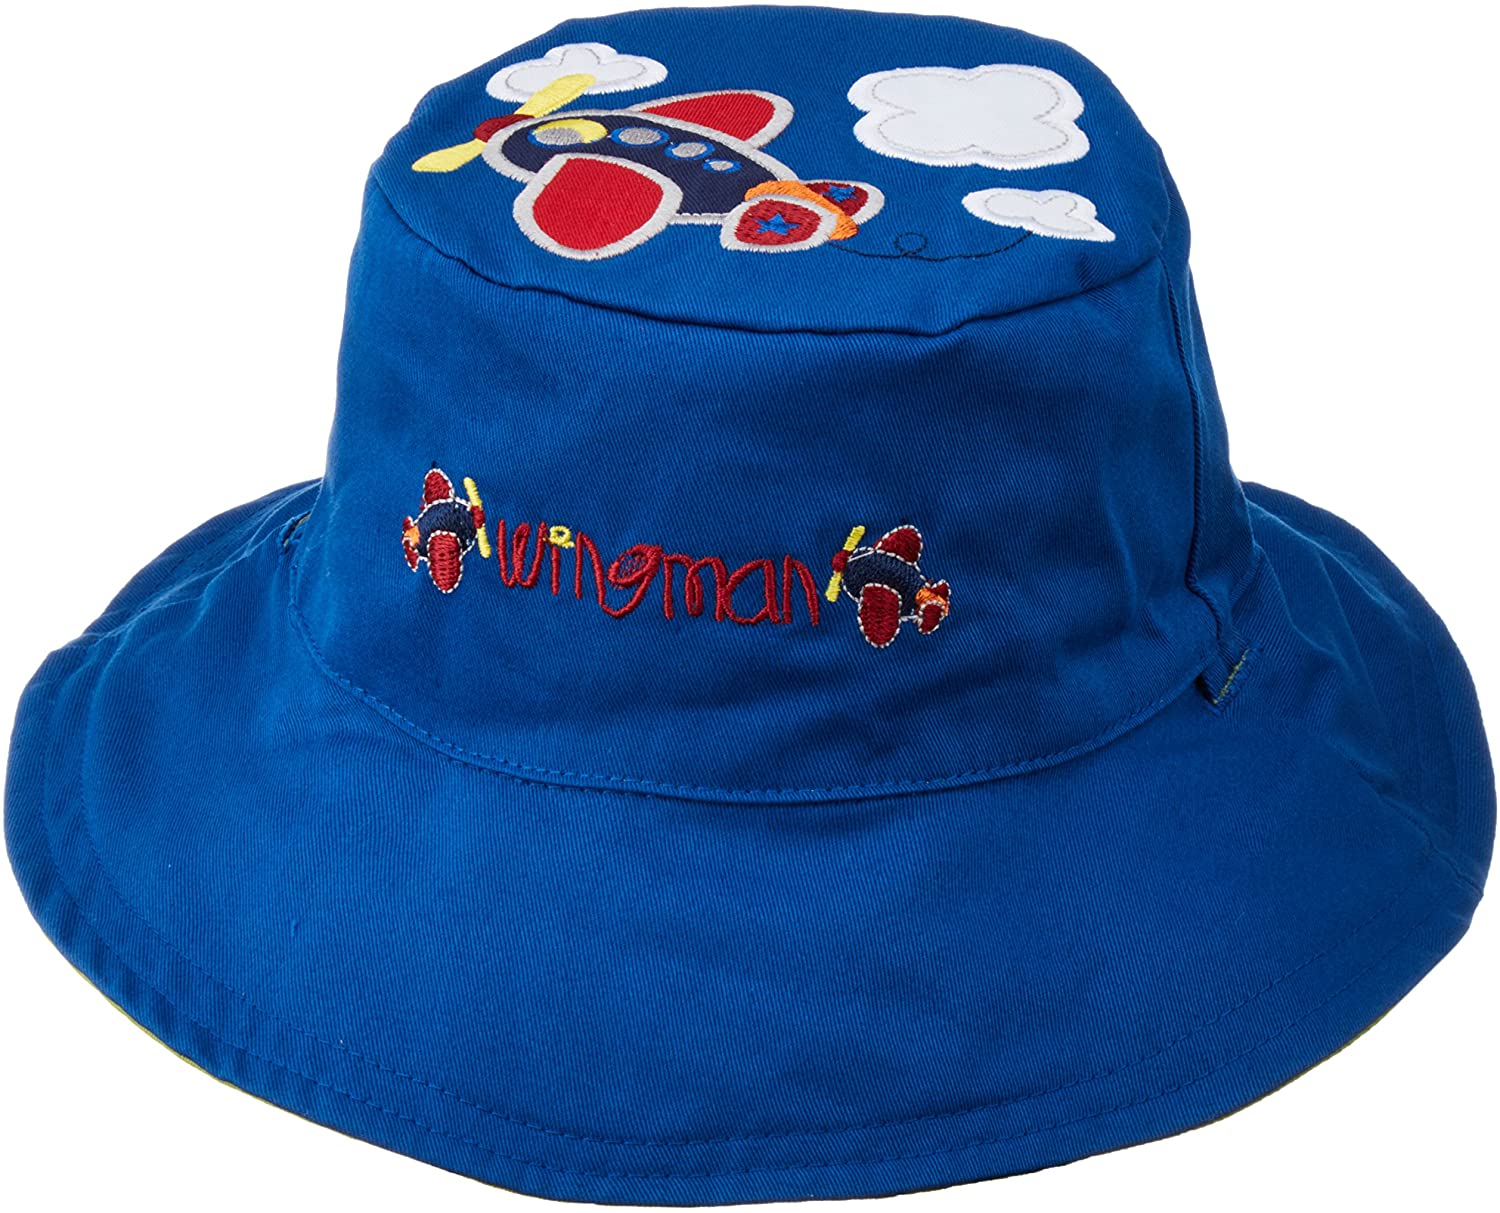 Καπέλο διπλής όψης, αντηλιακό UPF 50+Plane/Train - FlapJackKids